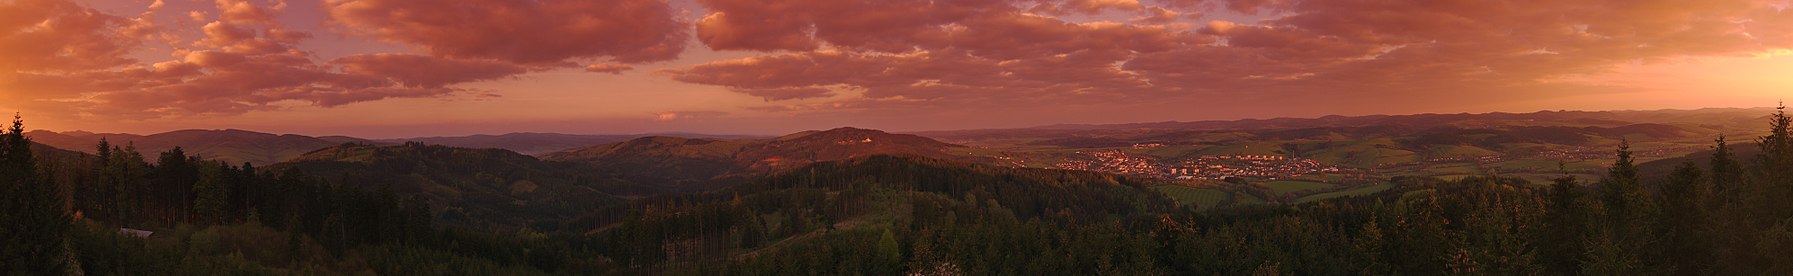 Panoramatický výhled z rozhledny Královec při východu slunce, okres Zlín.jpg